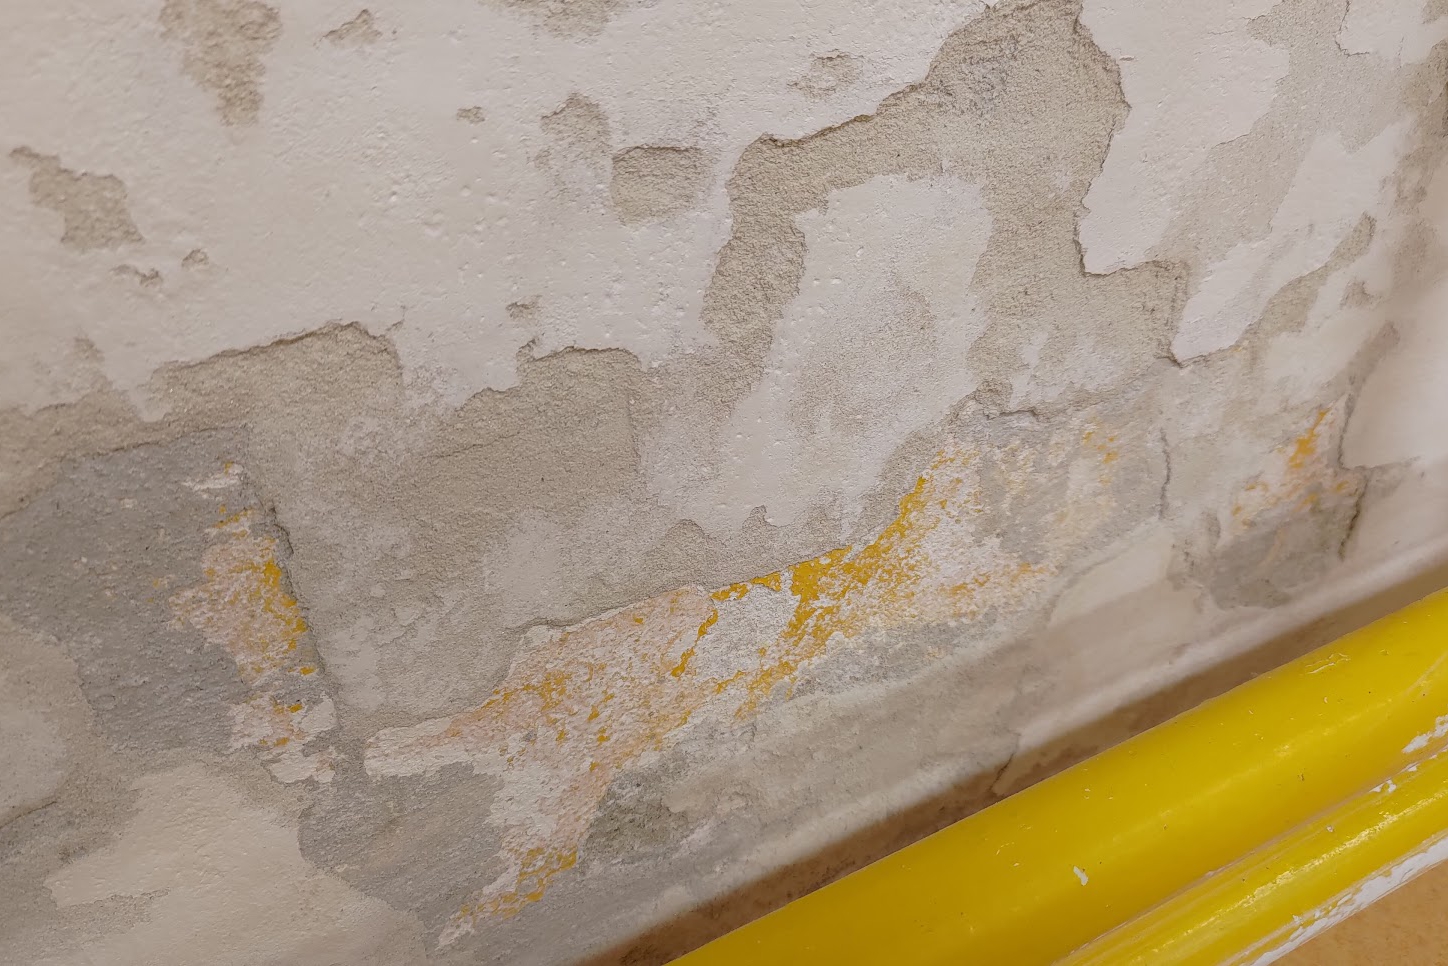 Usuwanie wilgoci na ścianie w szkole - ALPHA CZECH, Revolutionary reflective insulating coatings